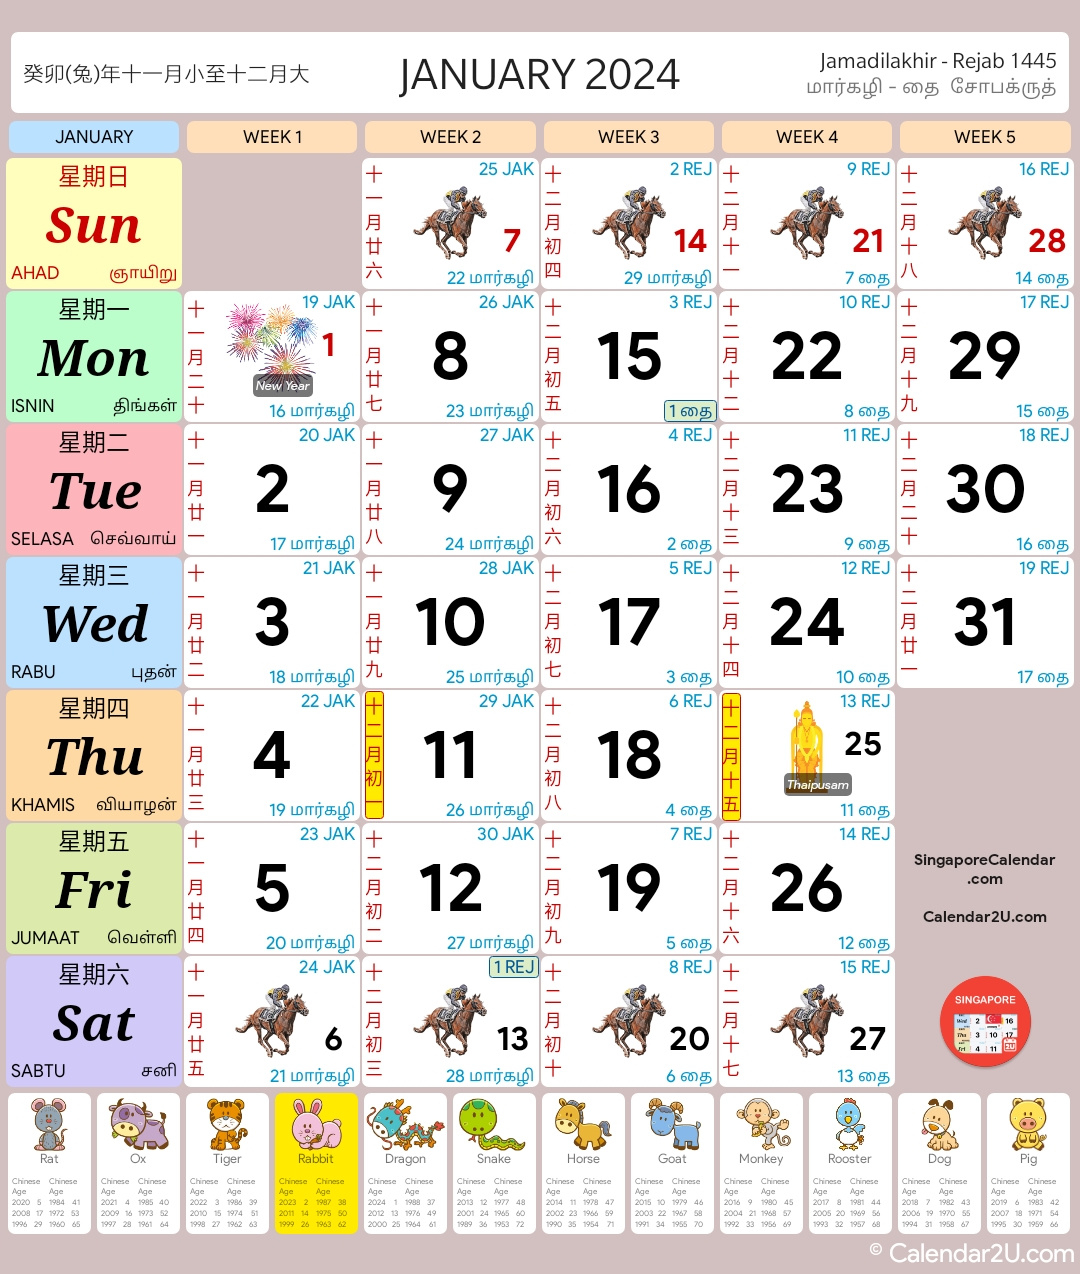 Singapore Calendar Year 2024 - Singapore Calendar with Free Printable Calendar 2024 With Singapore Holidays